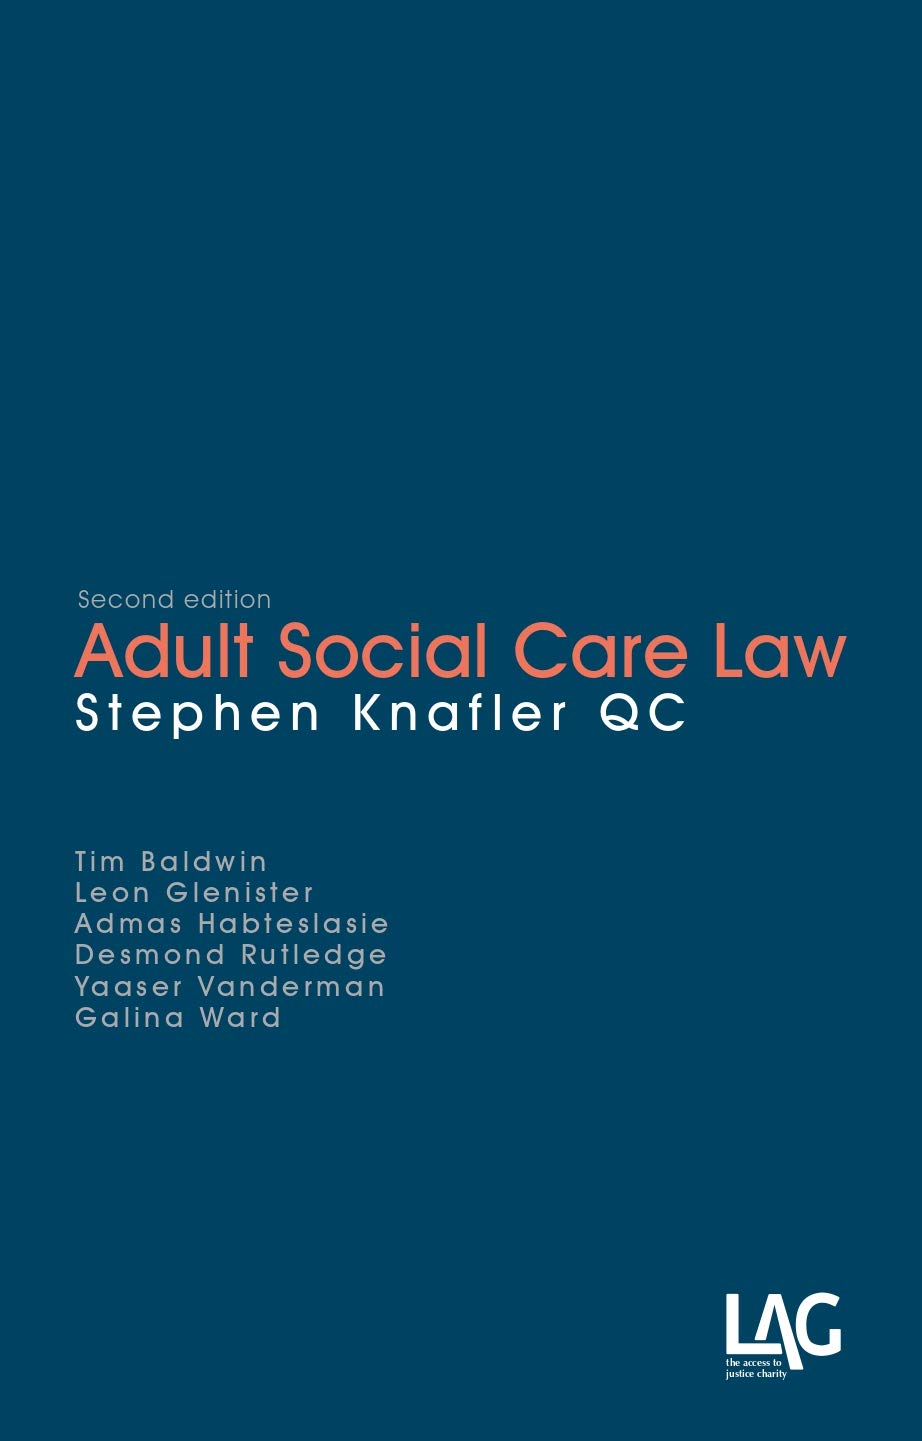 Adult Social Care Law | Stephen Knafler QC